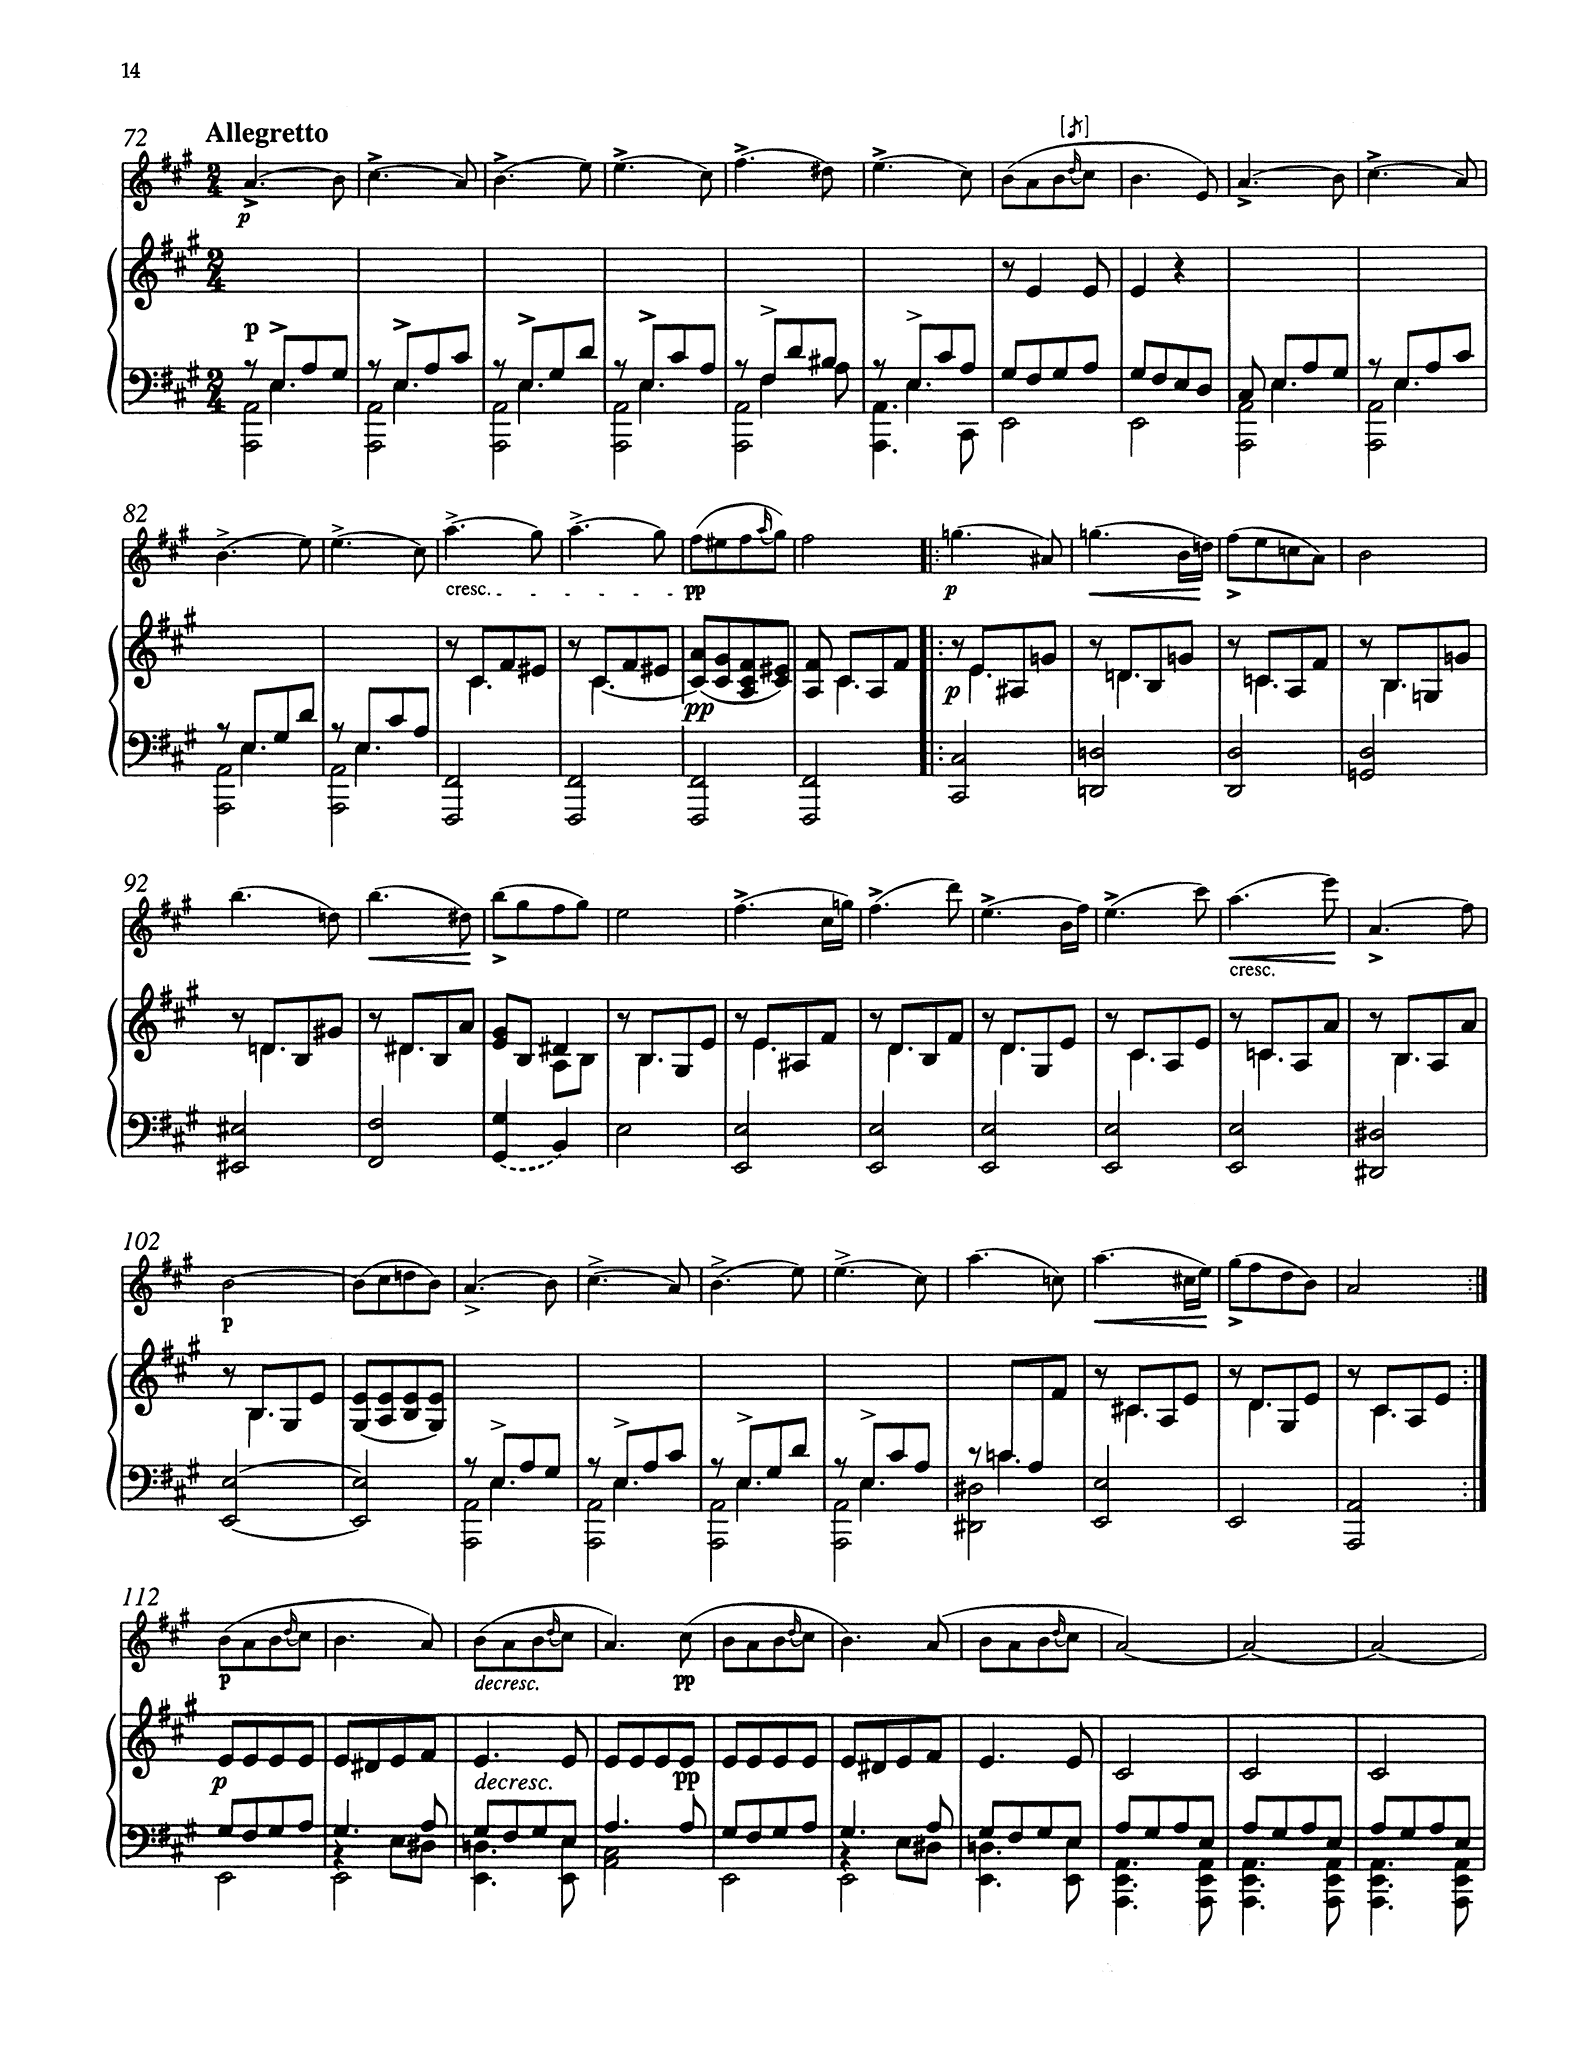 Schubert Sonata in A Minor, D. 821 ‘Arpeggione’ - Movement 3